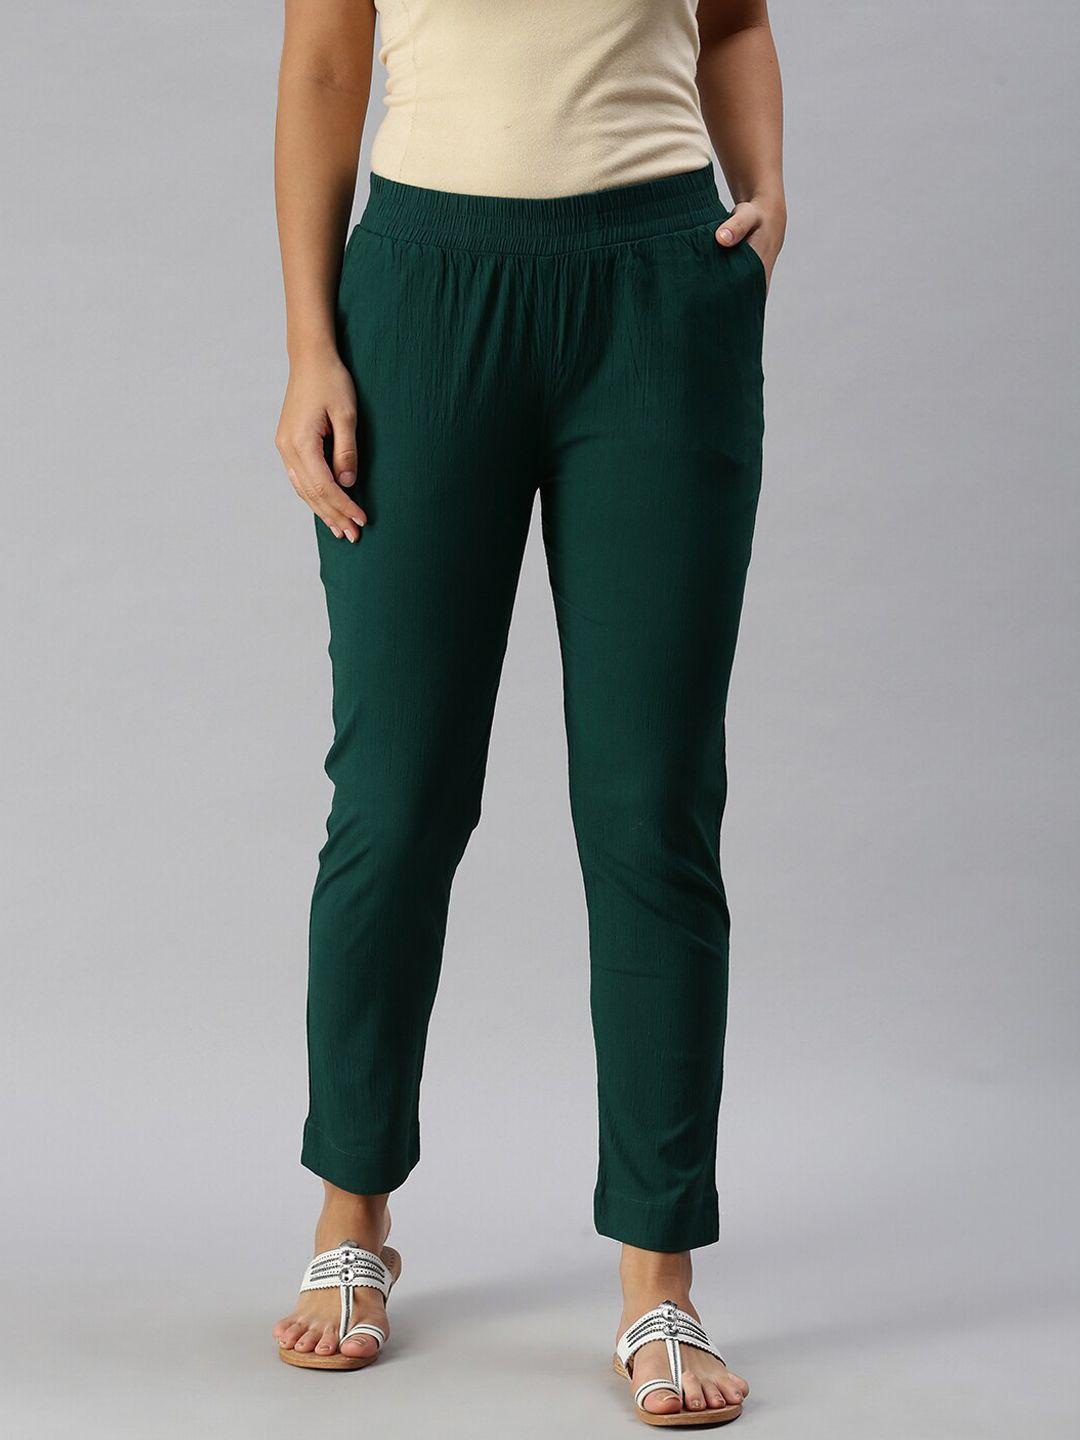 soch women green casual trousers